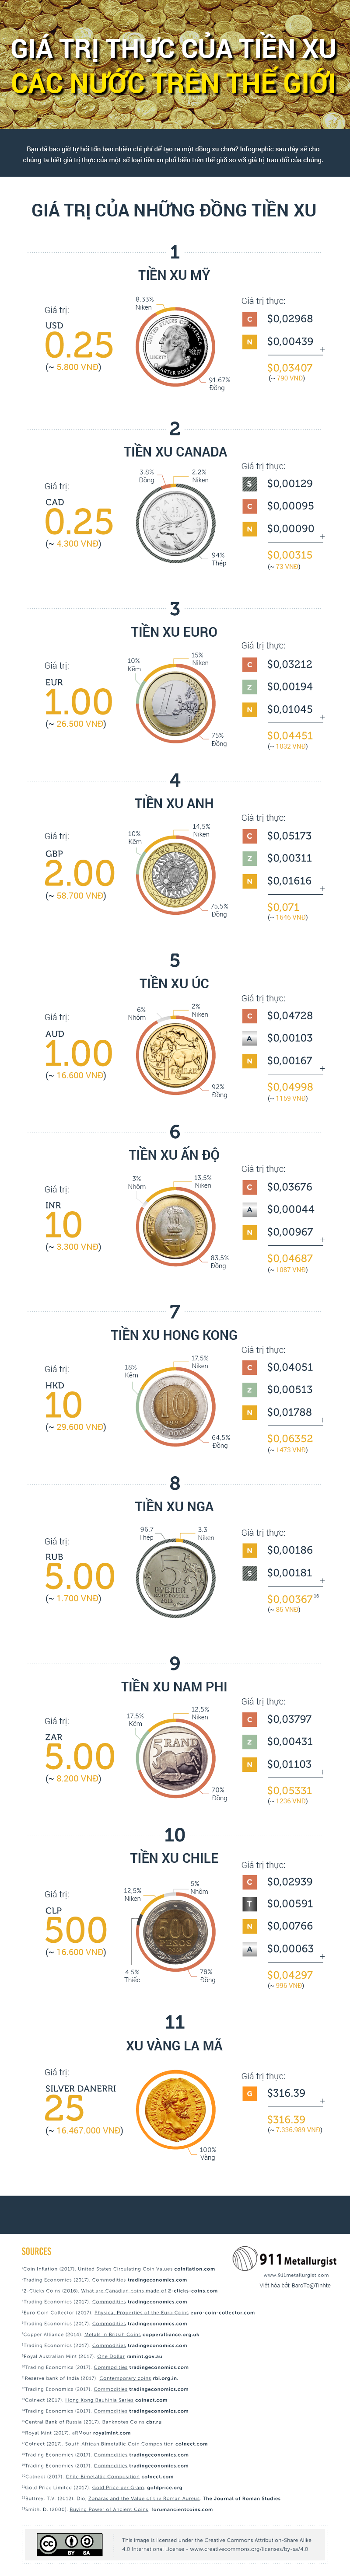 [Infographic] Giá trị thực của tiền xu các nước trên thế giới - Ảnh 1